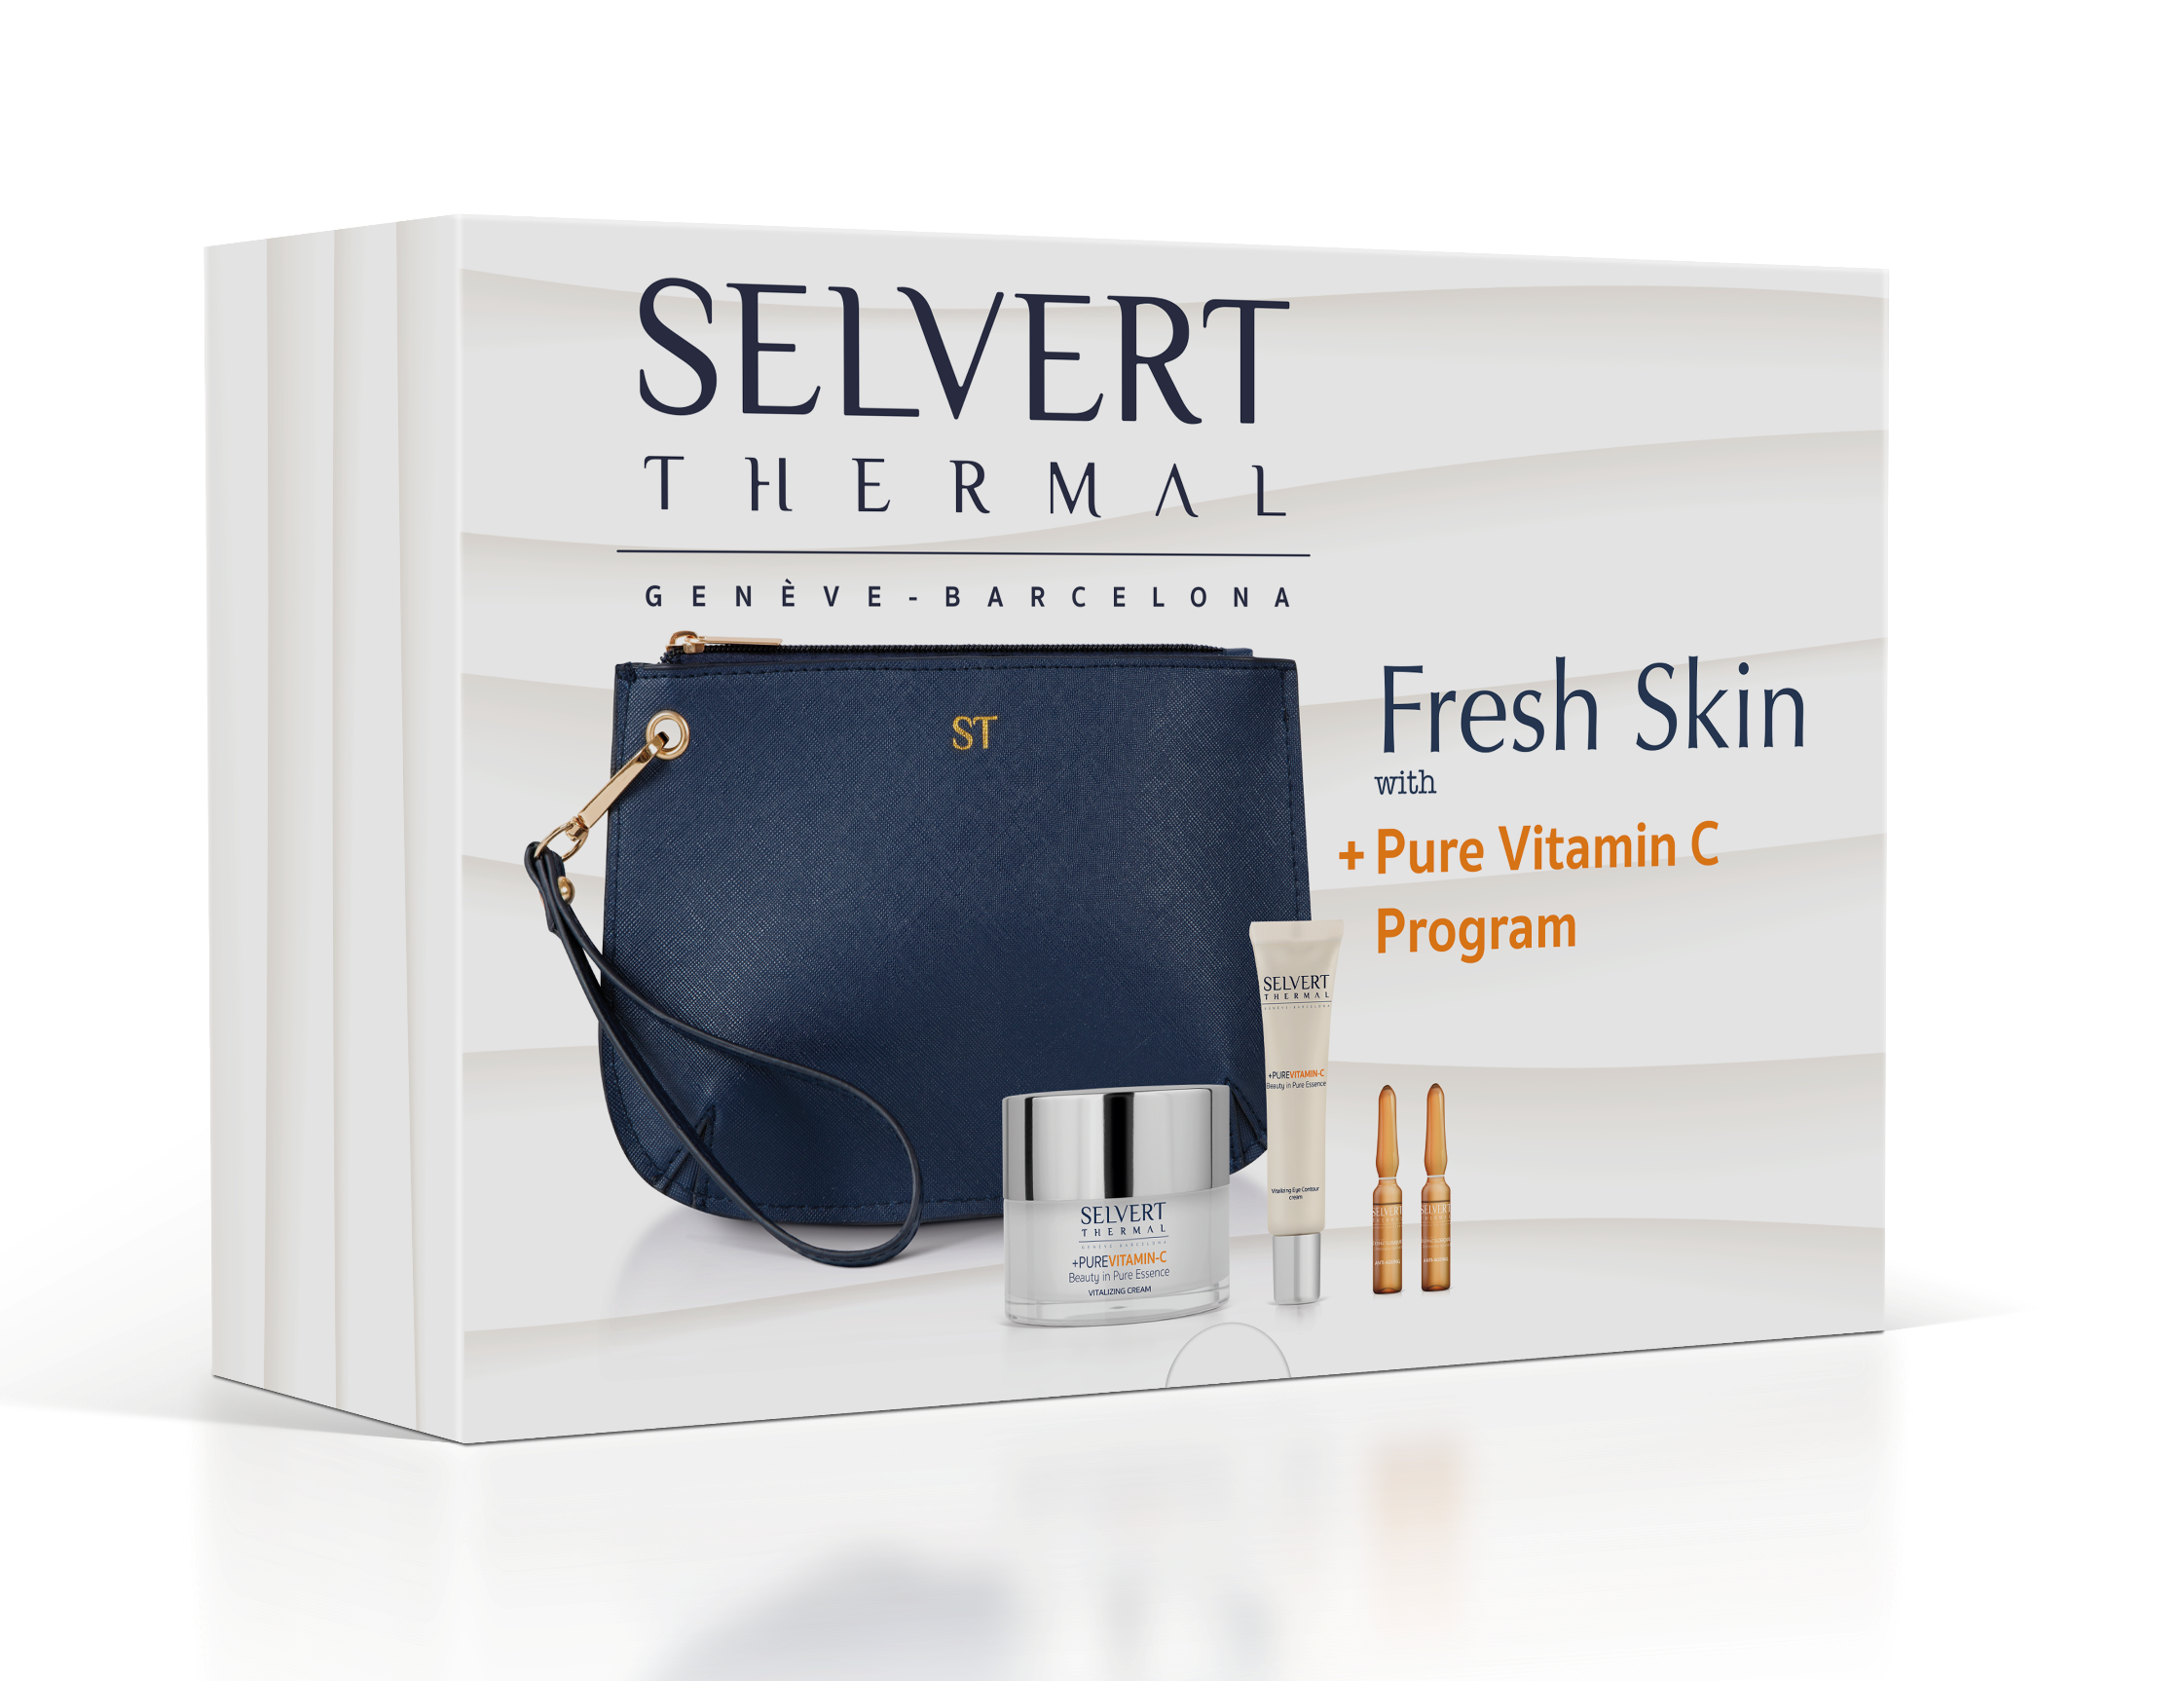 Nou programa Fresh Skin + Pure Vitamin C de Selvert Thermal